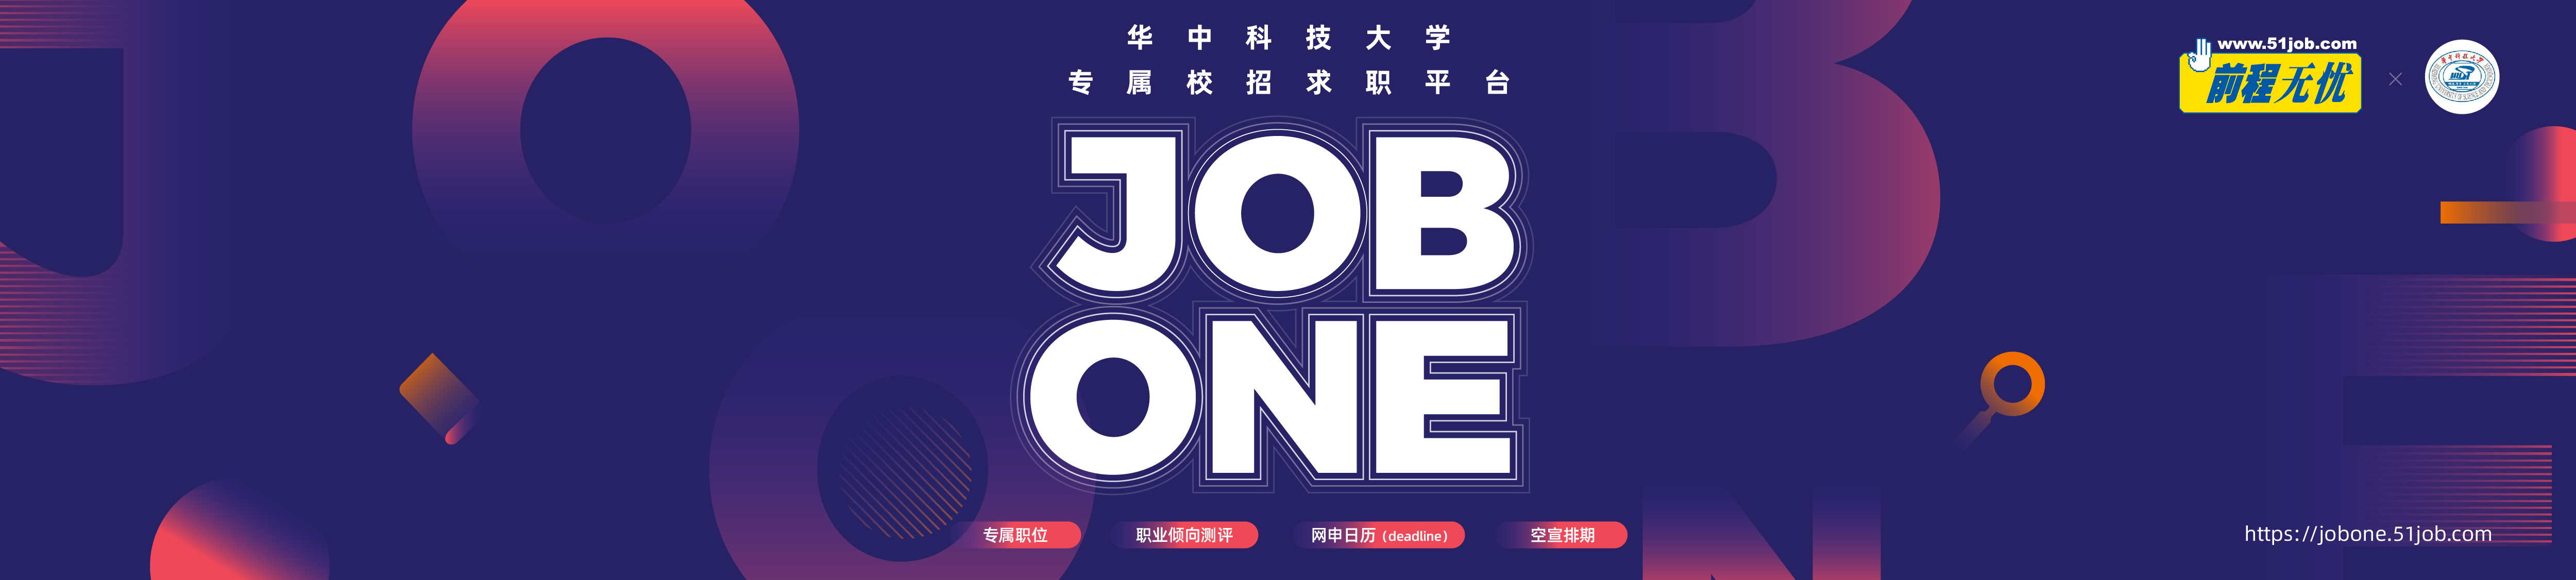 华中科技大学jobone线上双选会